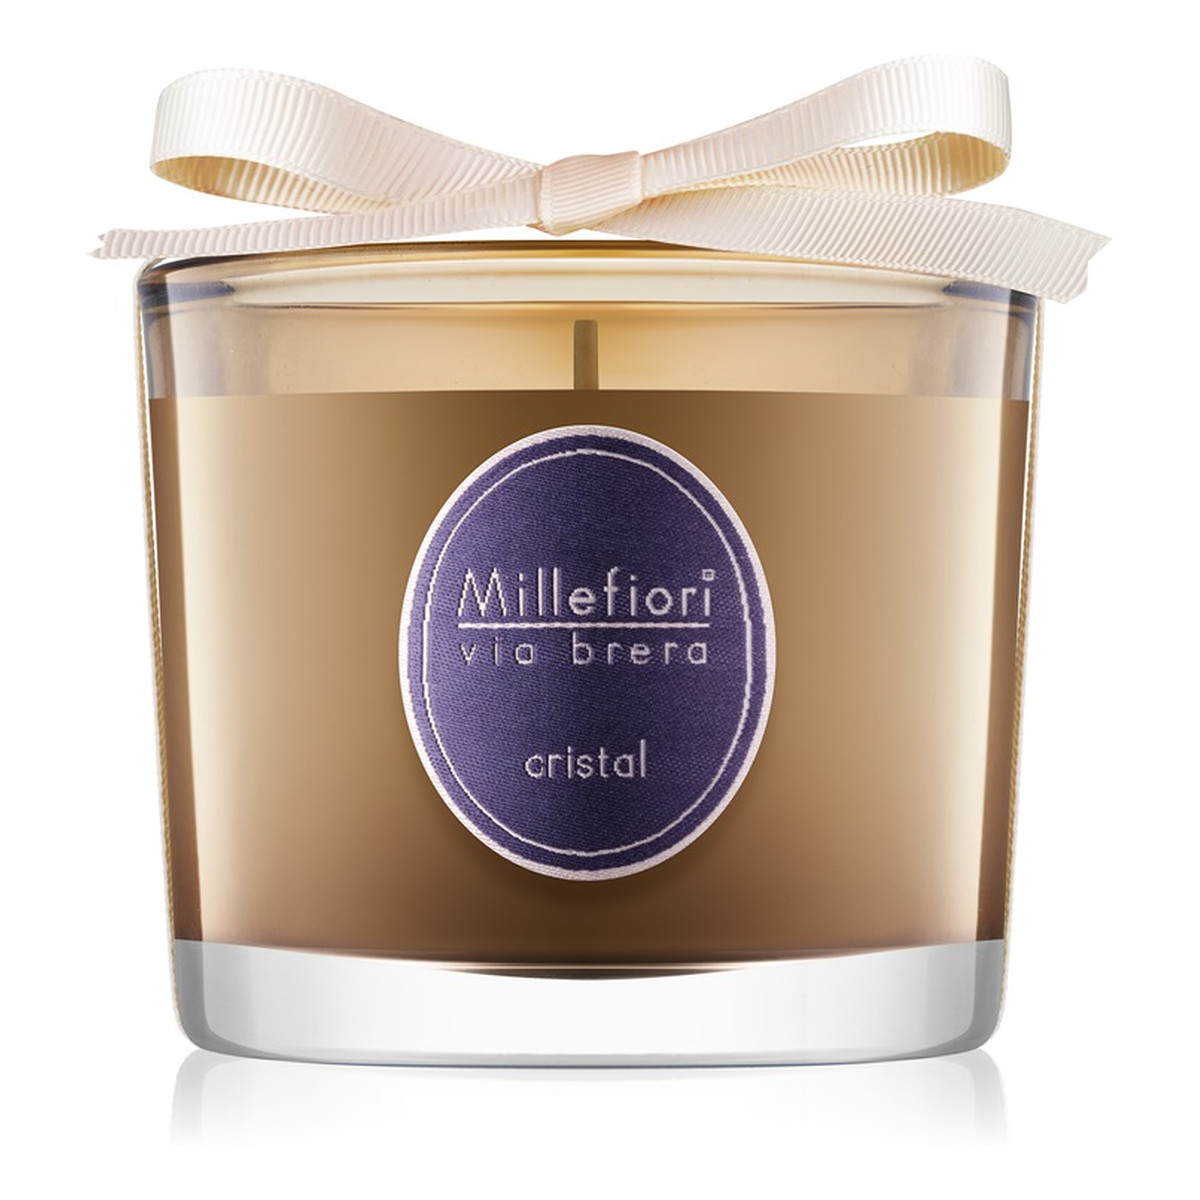 Millefiori Via Brera świeczka zapachowa Cristal 180g